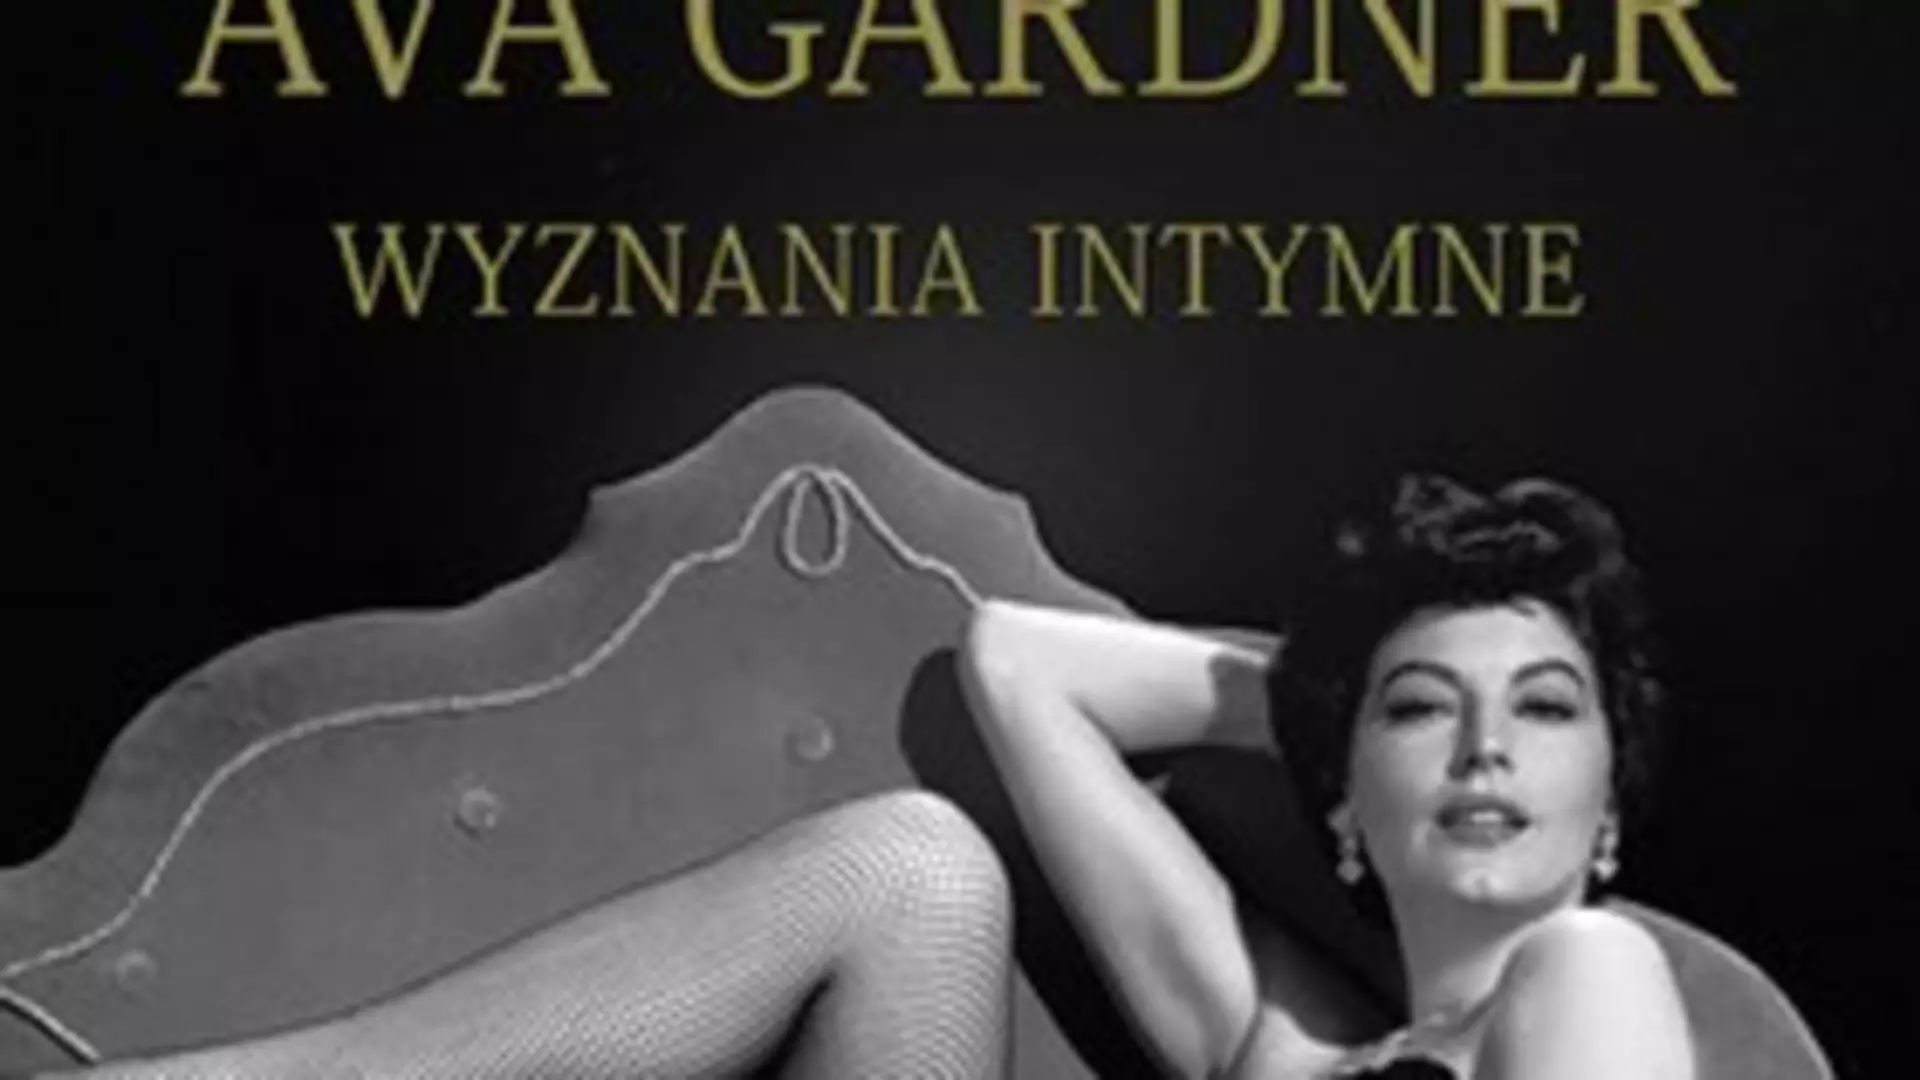 Ava Gardner "Wyznania intymne" - premiera książki!